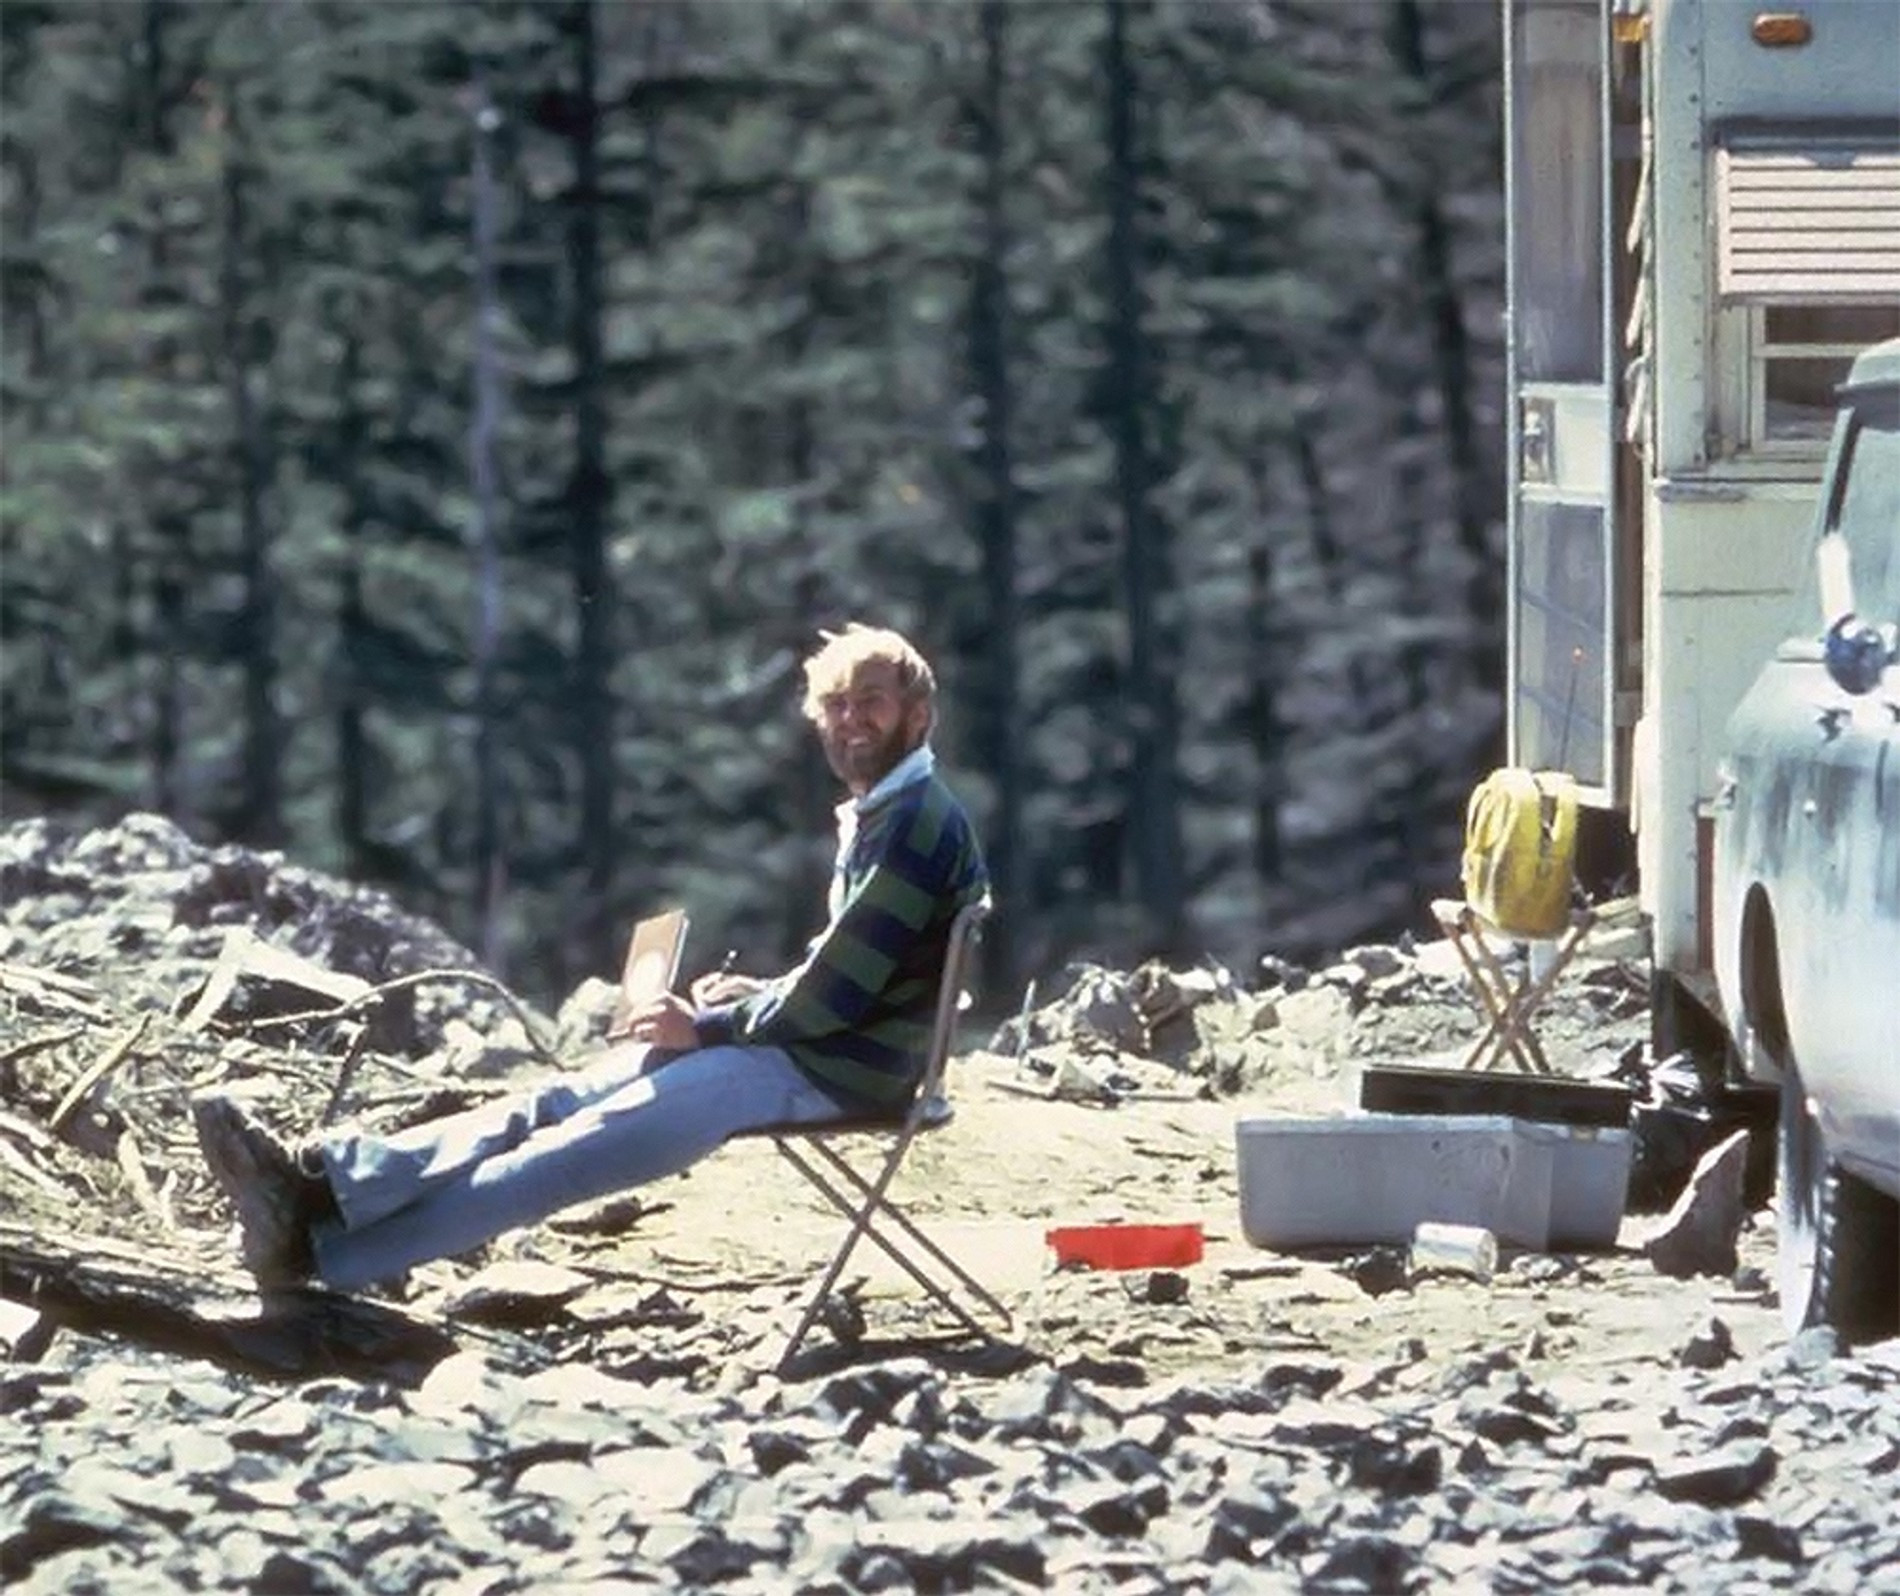 Последнее фото вулканолога Дэвида Джонсона
Источник: архив автора